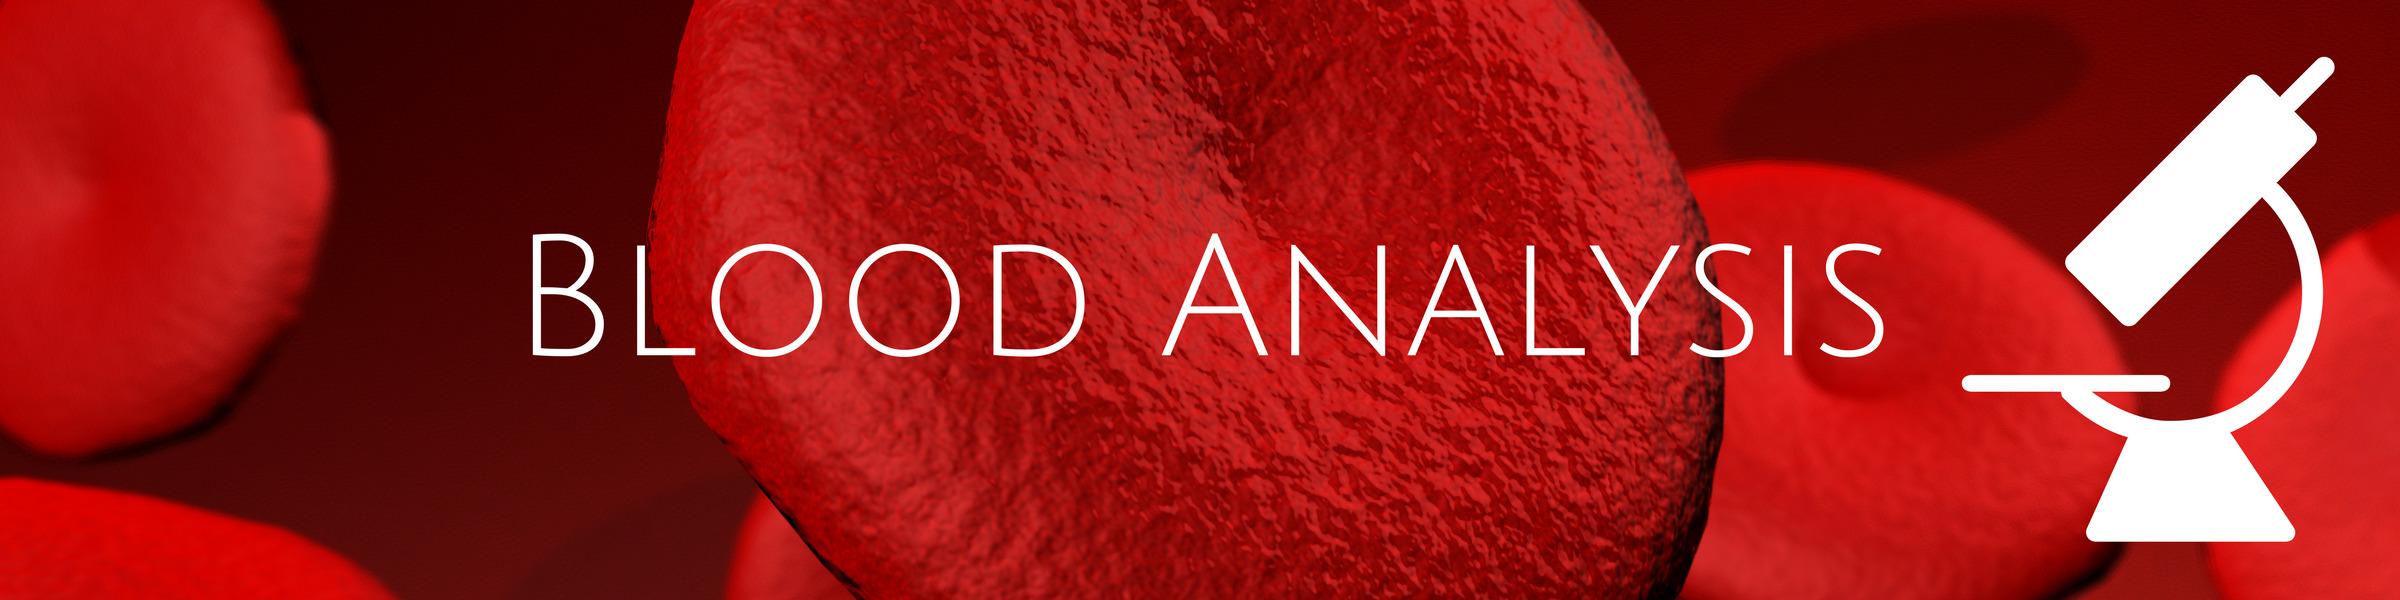 Blood Analysis - Book Online